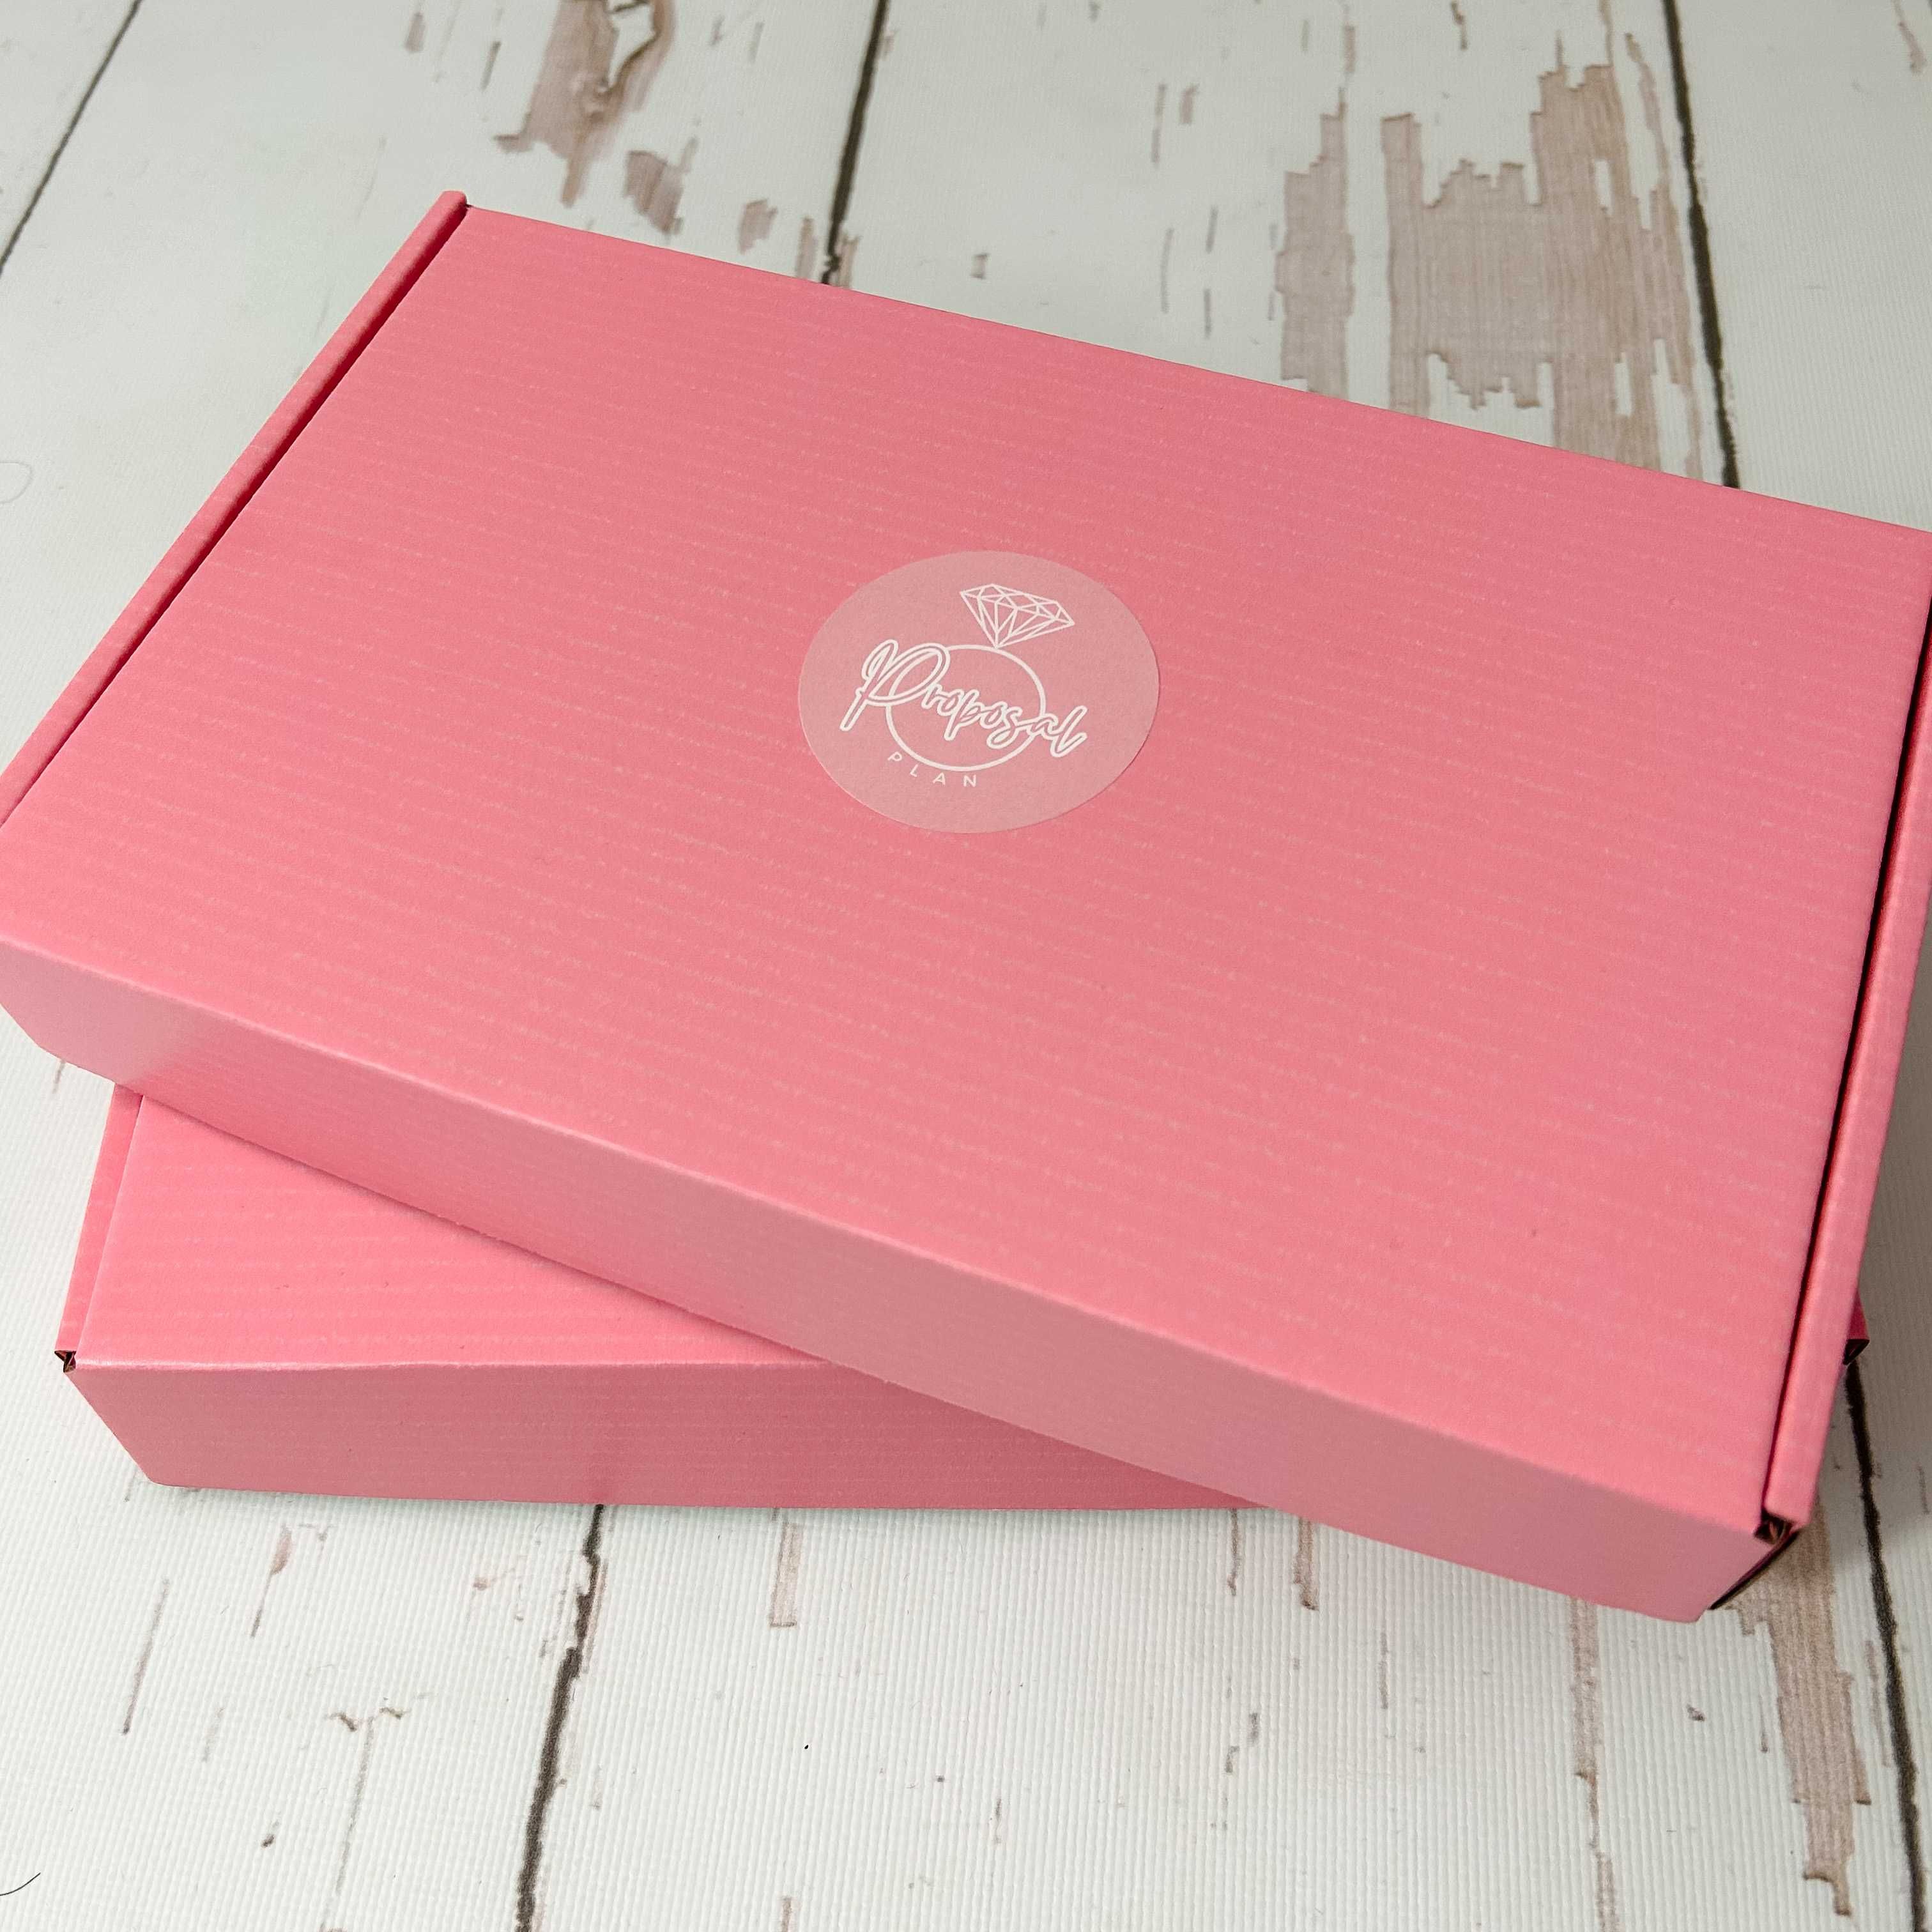 Proposal Plan Box - cadoul ideal pentru iubita ta